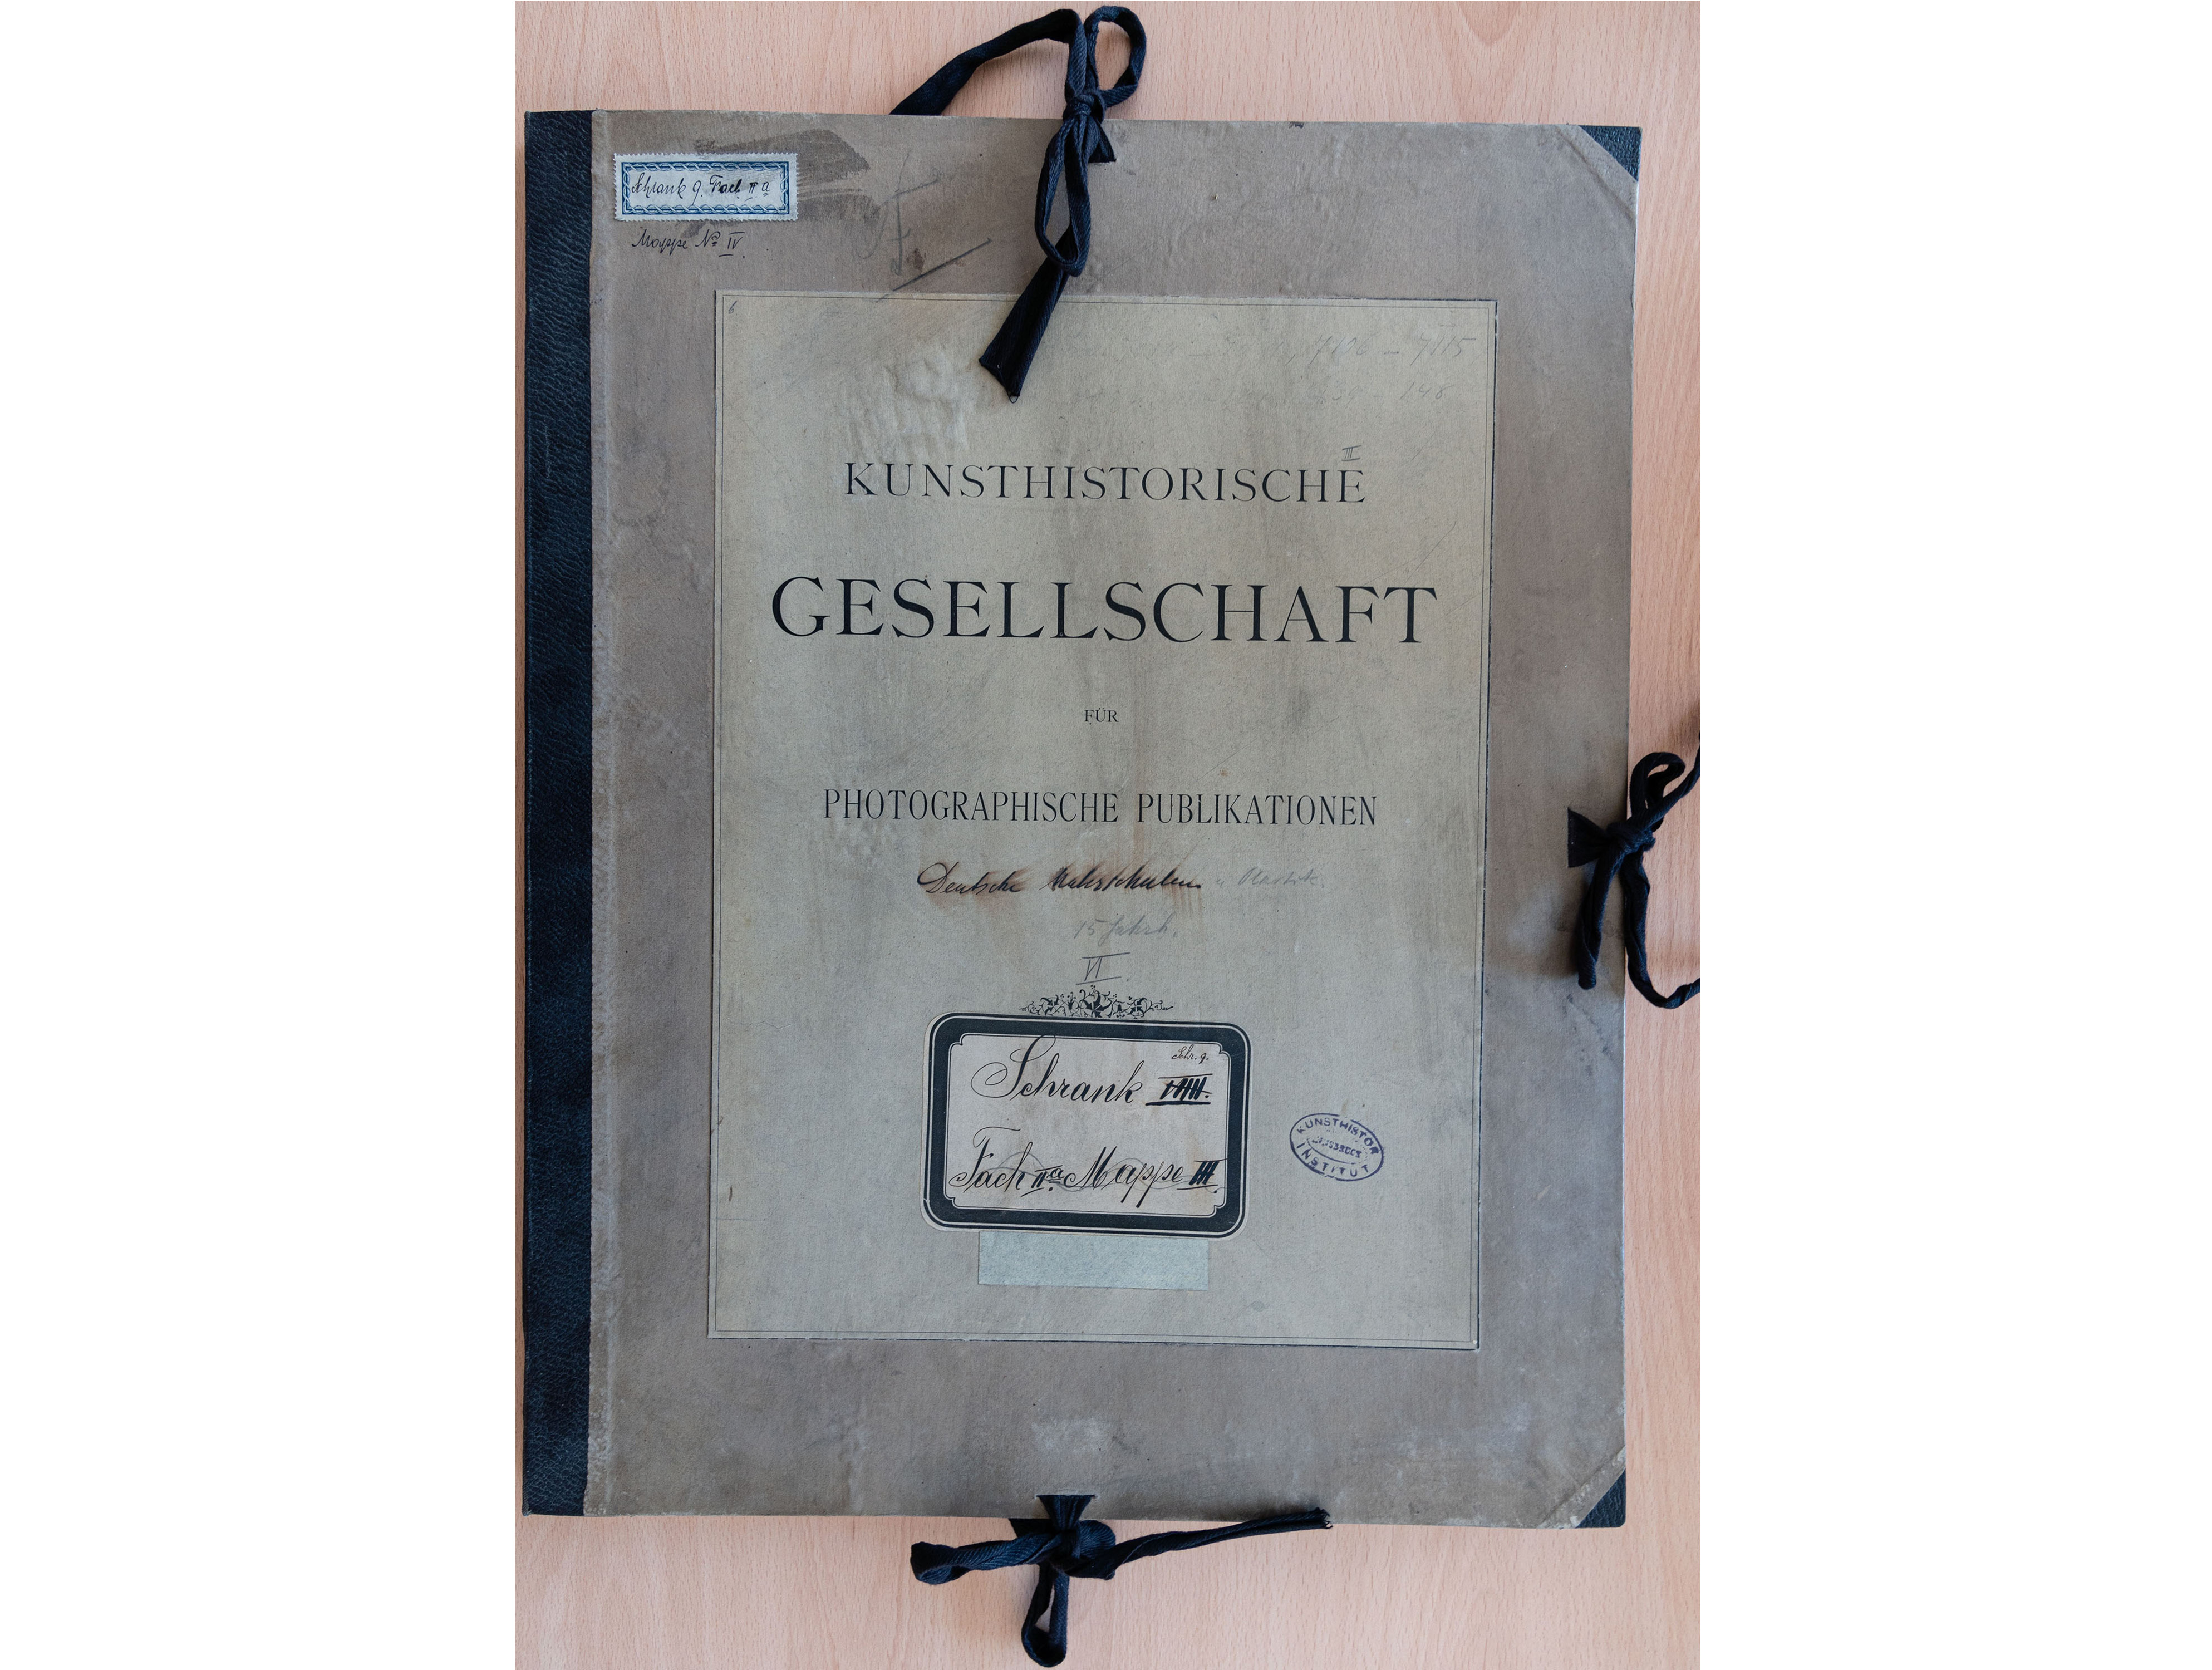 Schrank 9, Mappe, Kunsthistorische Gesellschaft für photographische Publikationen, Deutsche Malerschulen, 52 x 41 cm